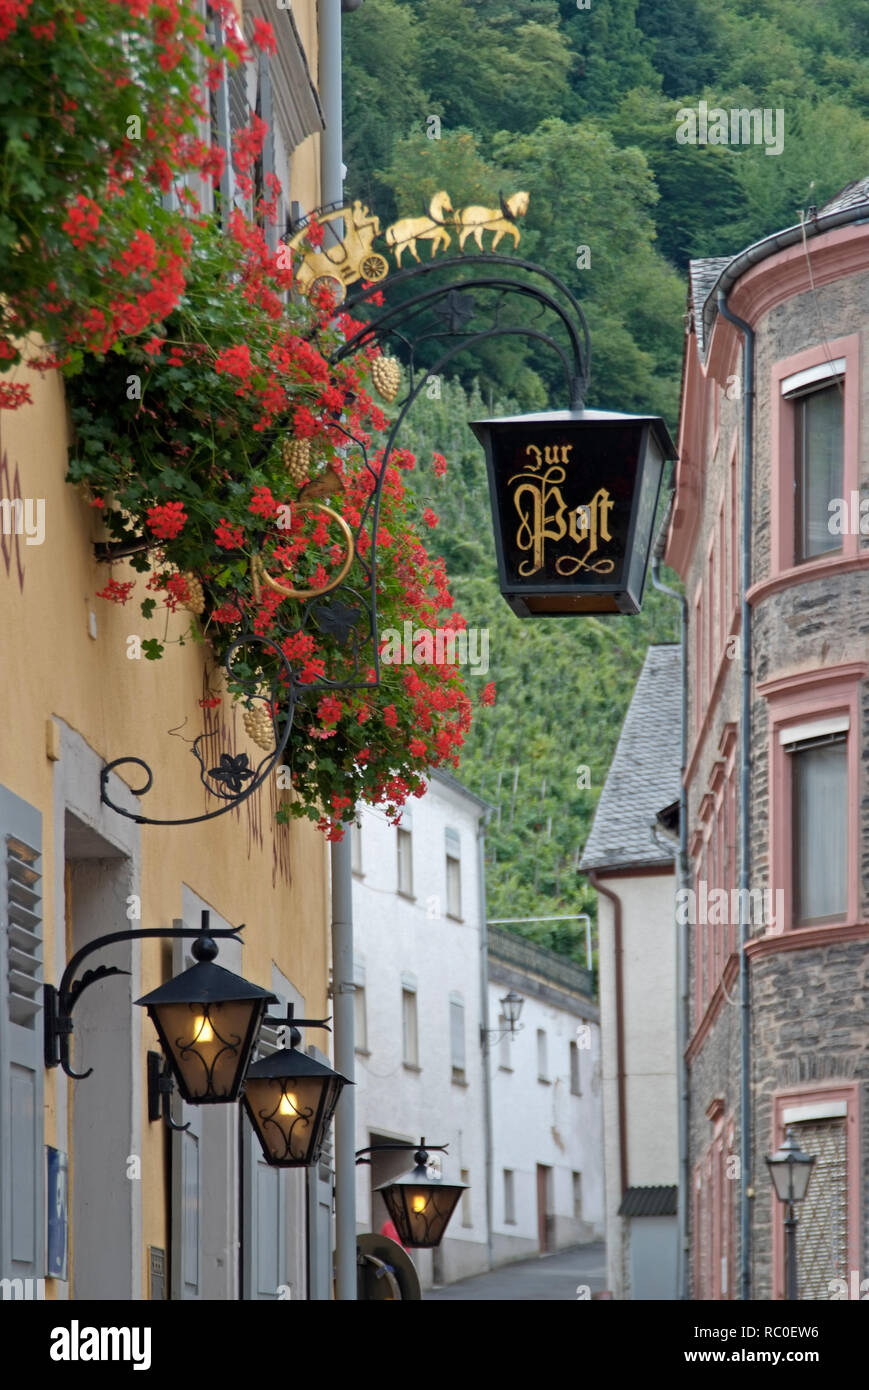 Impressione in der Altstadt des Ortsteils Bernkastel, Bernkastel-Kues, Mittelmosel, Landkreis Bernkastel-Wittlich Renania-Palatinato, Deutschland, Europa Foto Stock